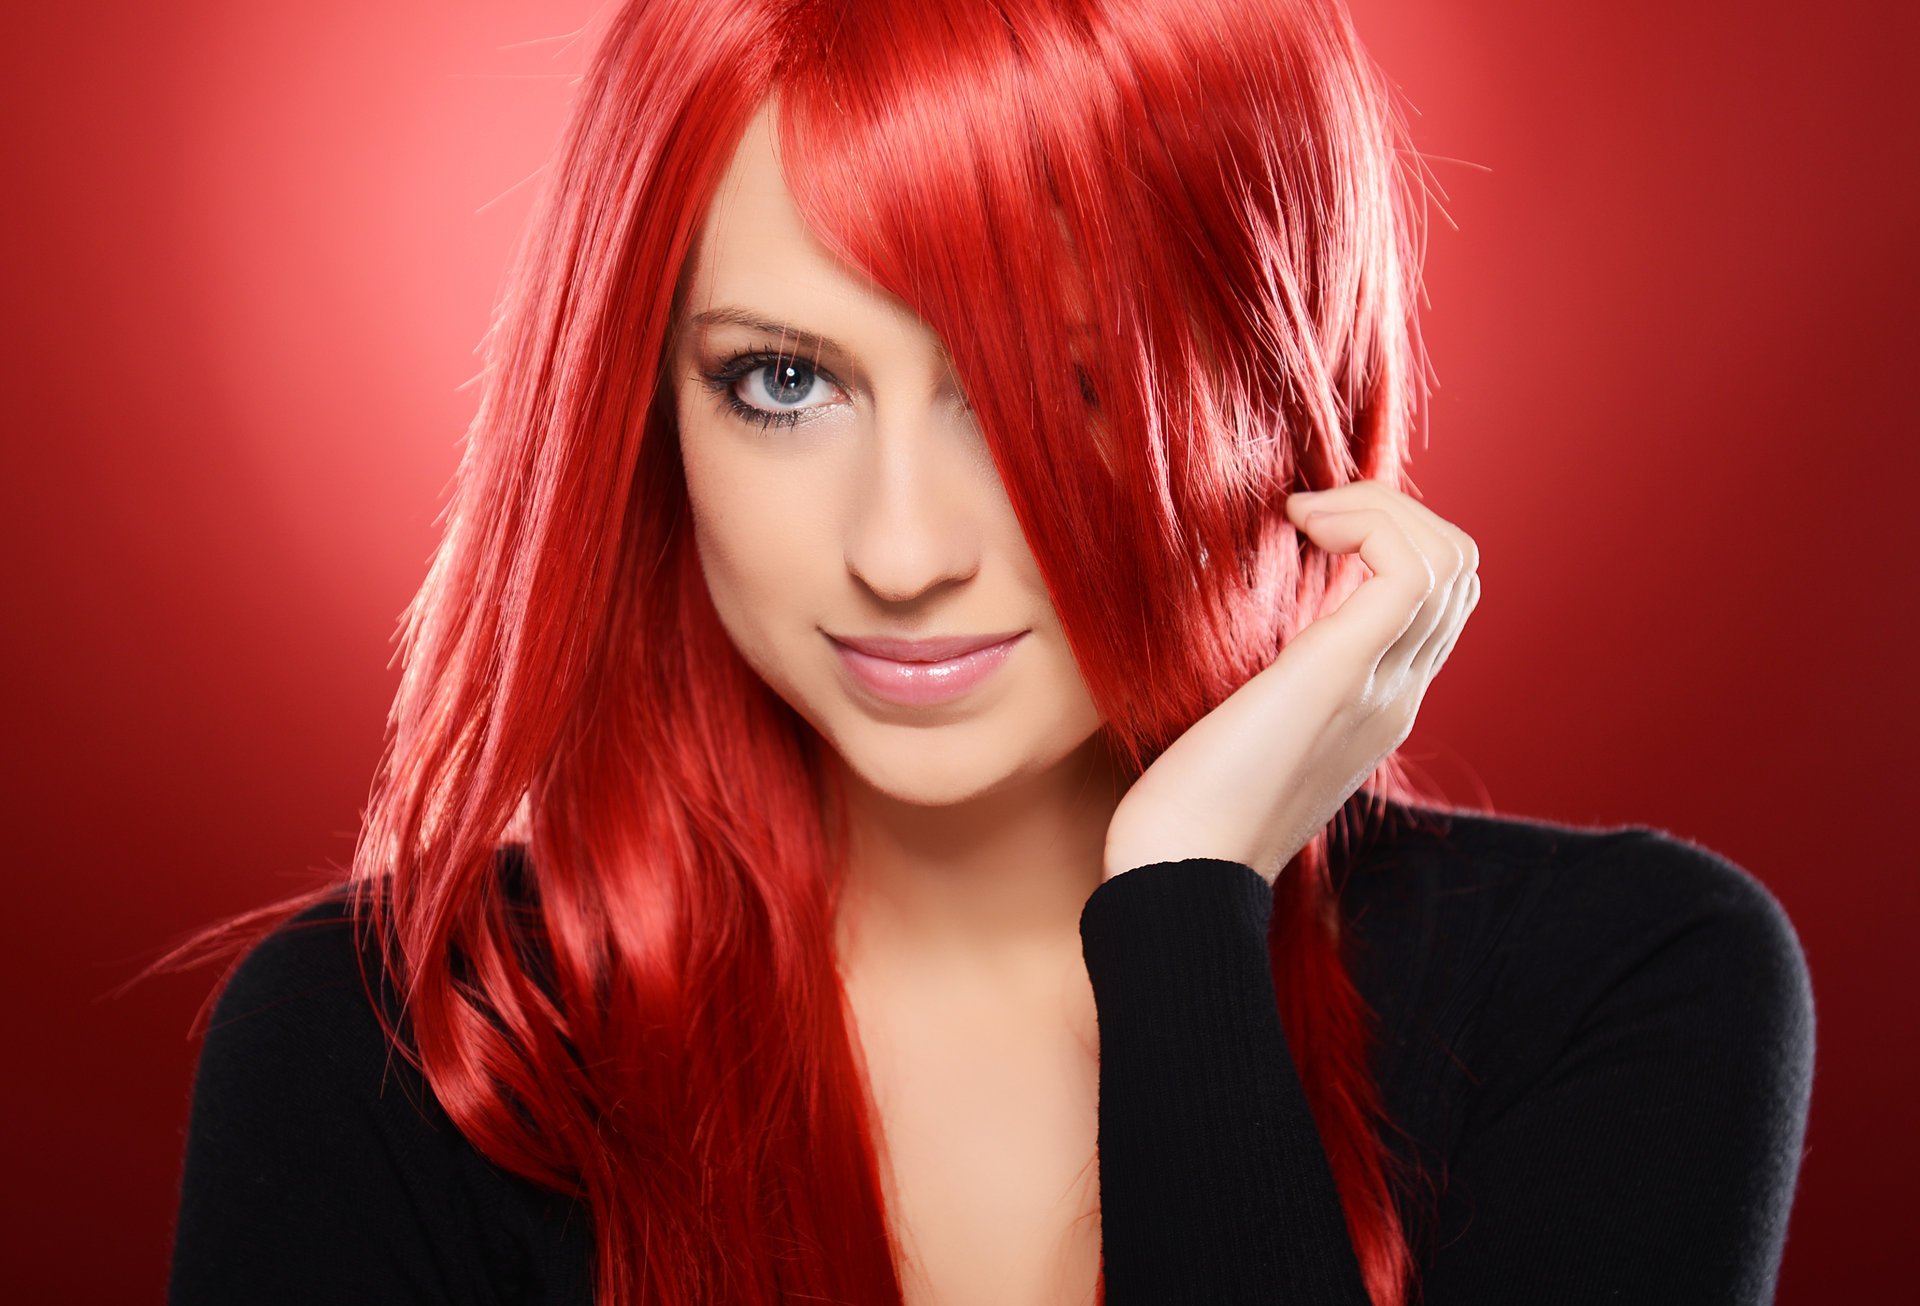 Красит красный перец волосы